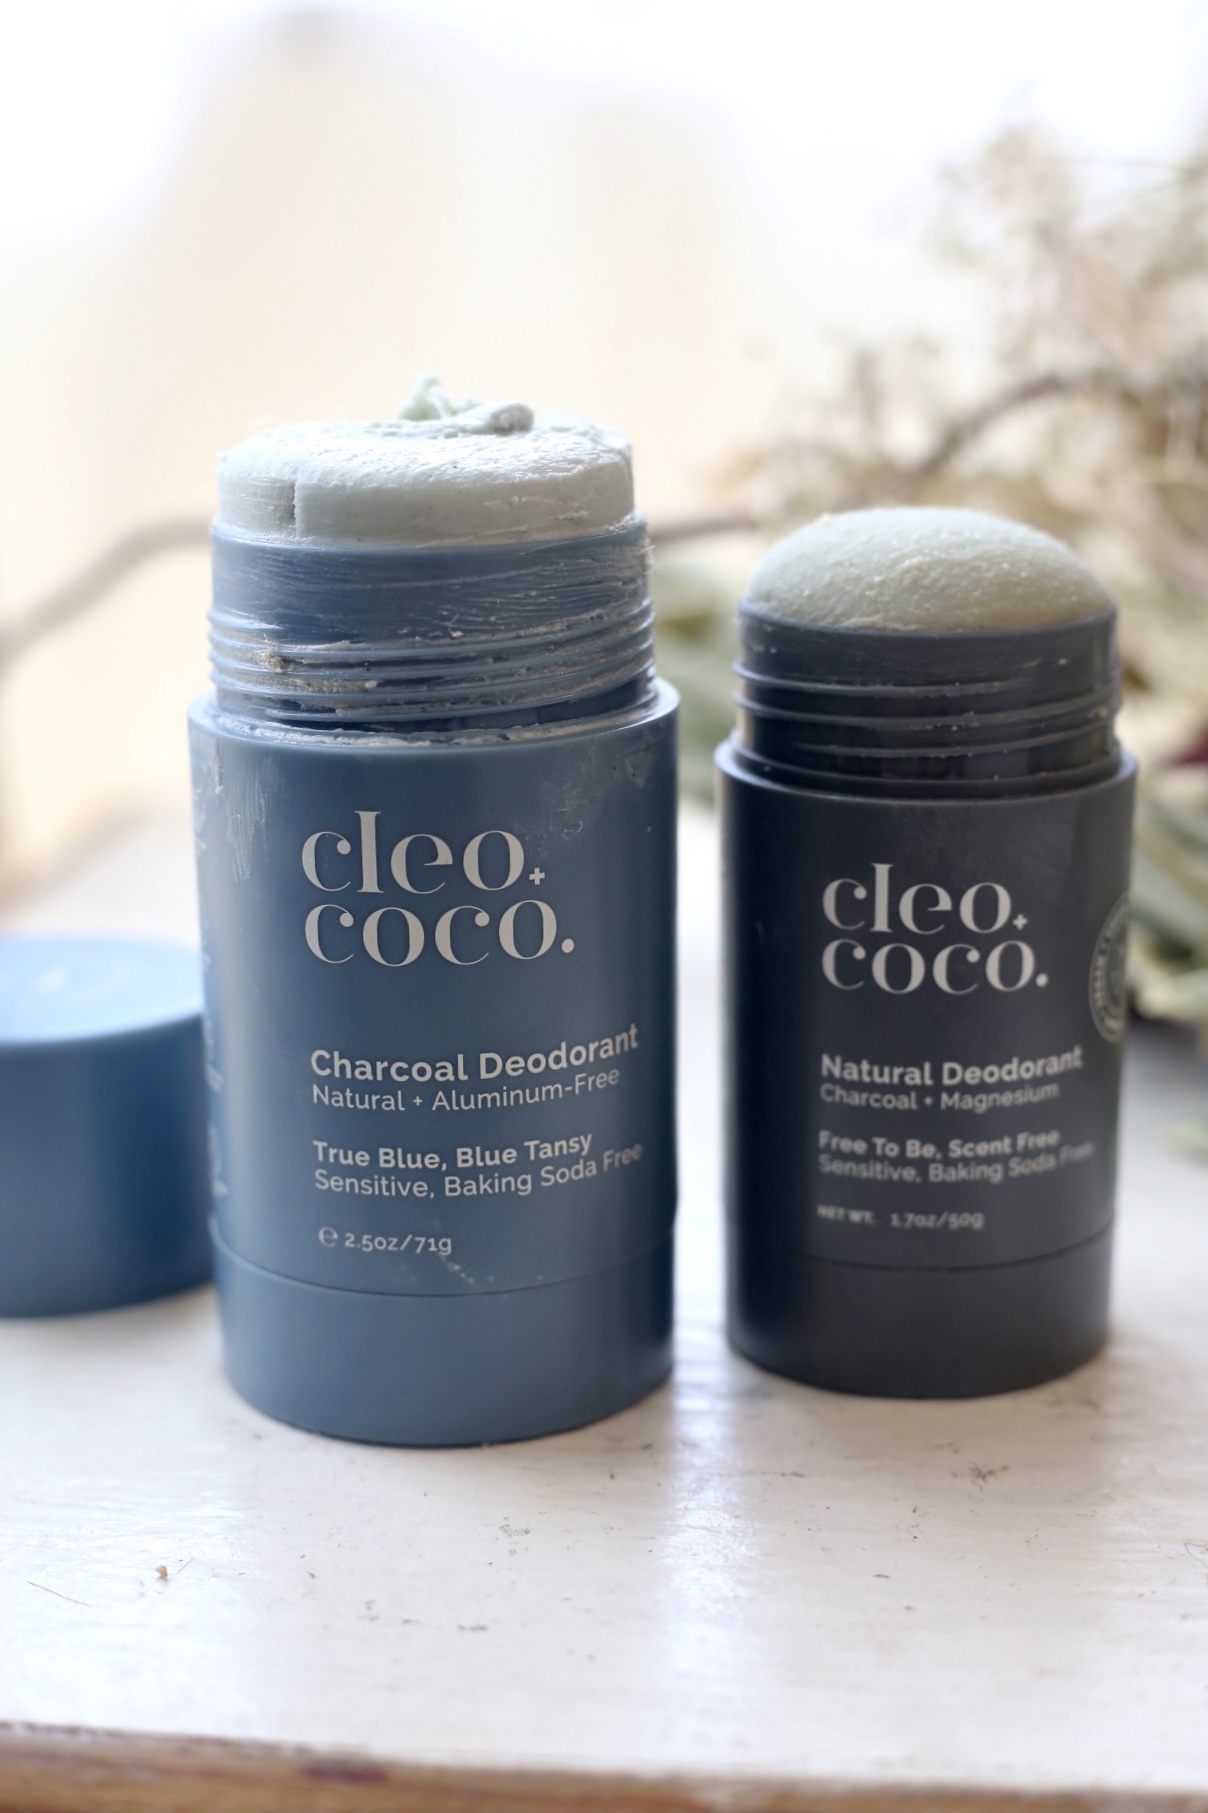 Cleo coco deodorant